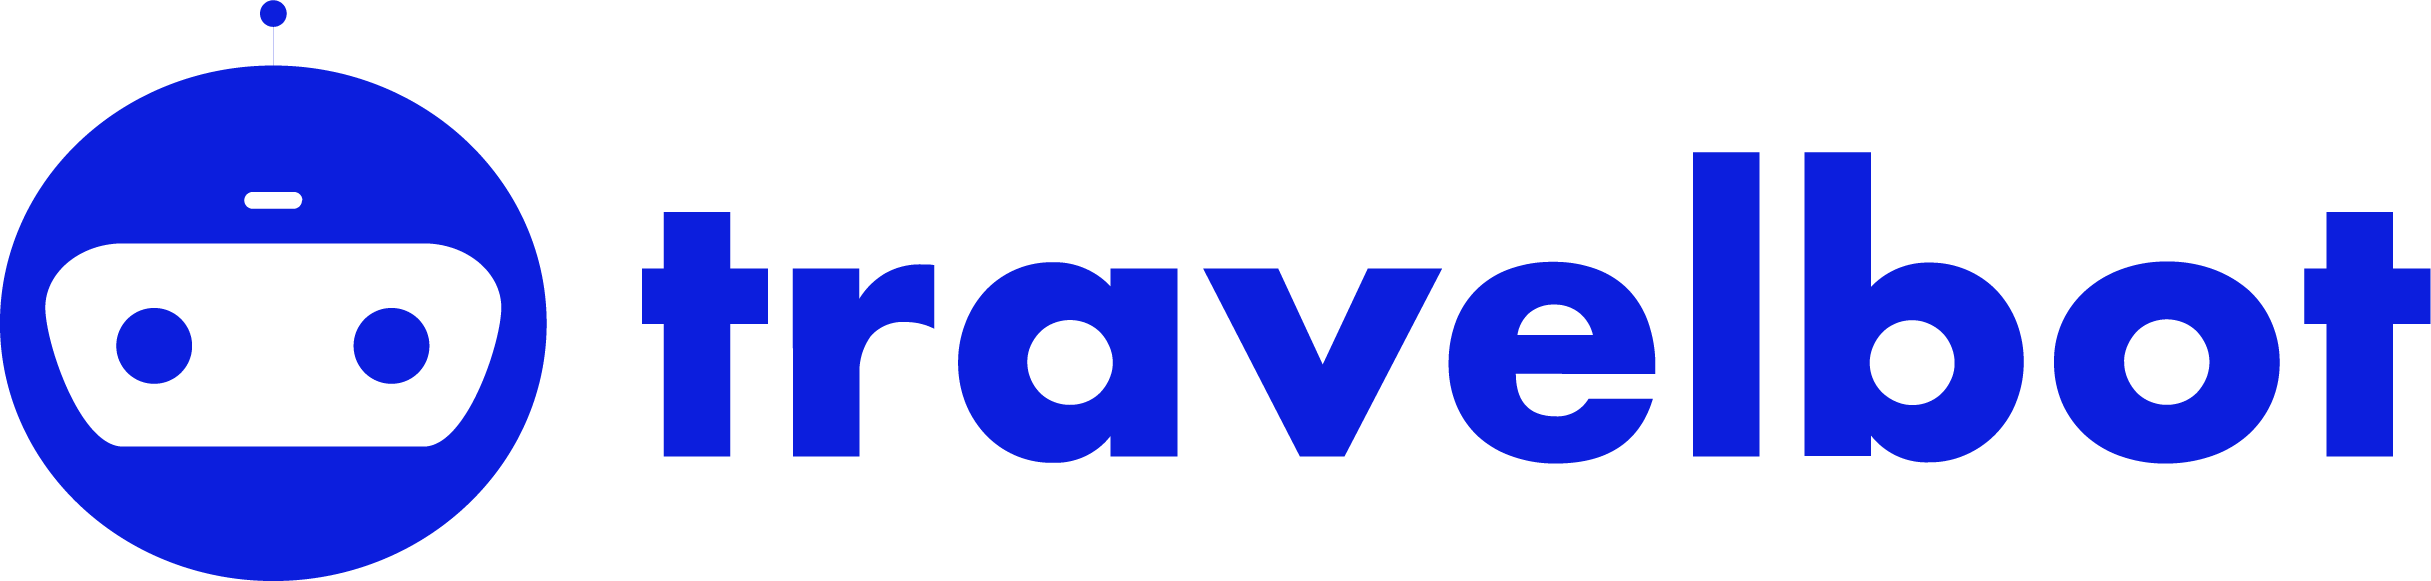 HelpCenter Travelbot logo